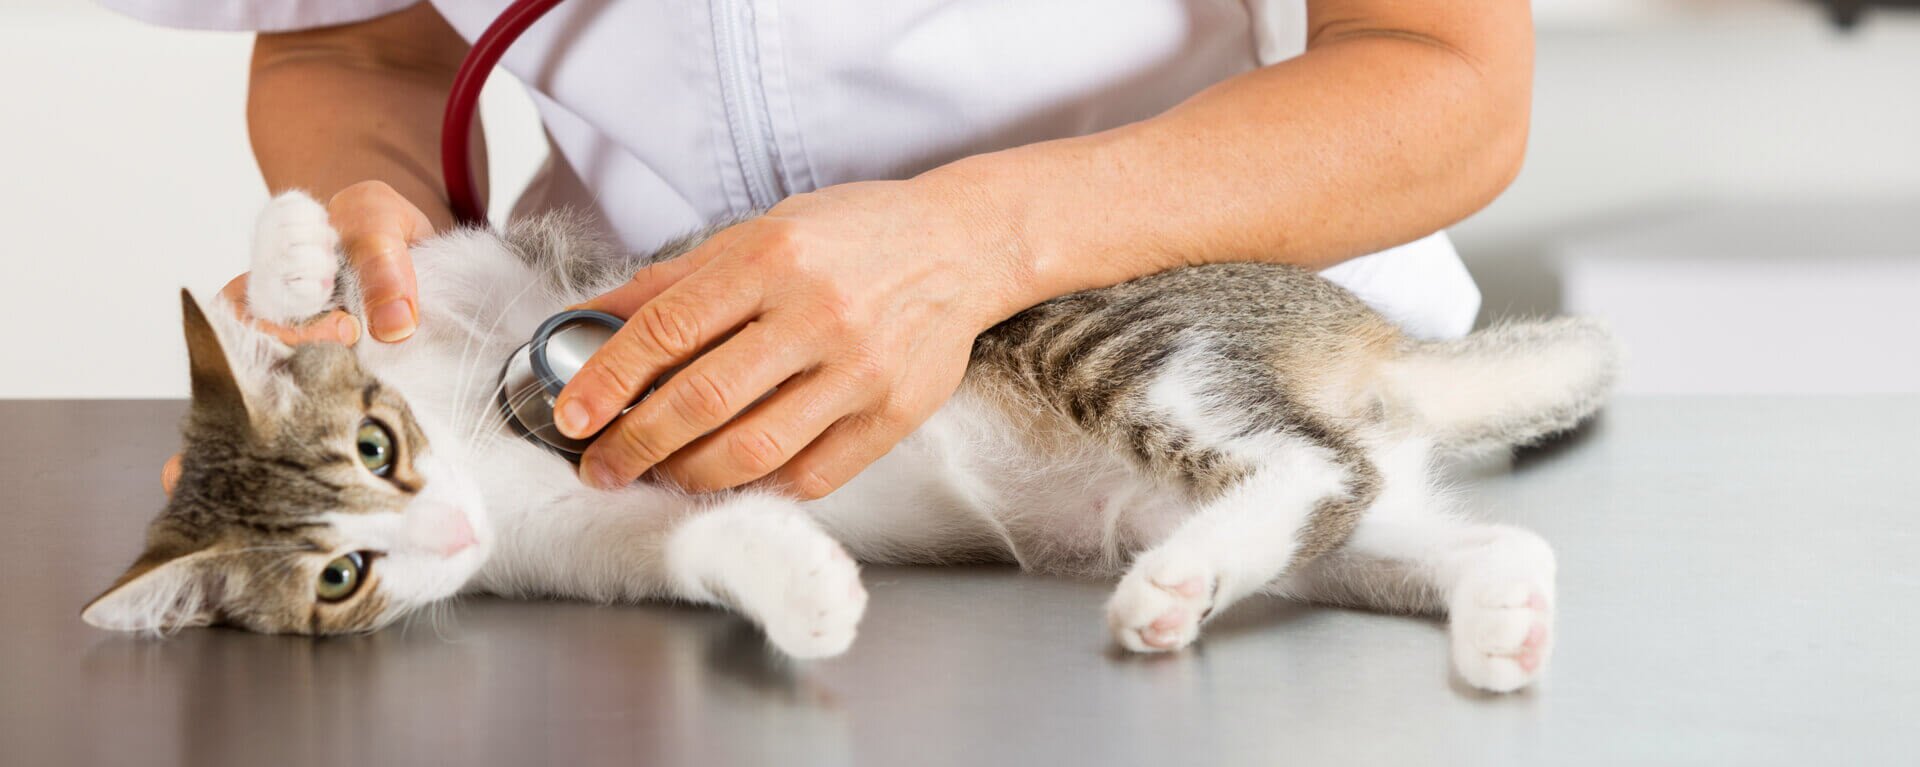 Бешенство у кошек: симптомы, профилактика и лечение